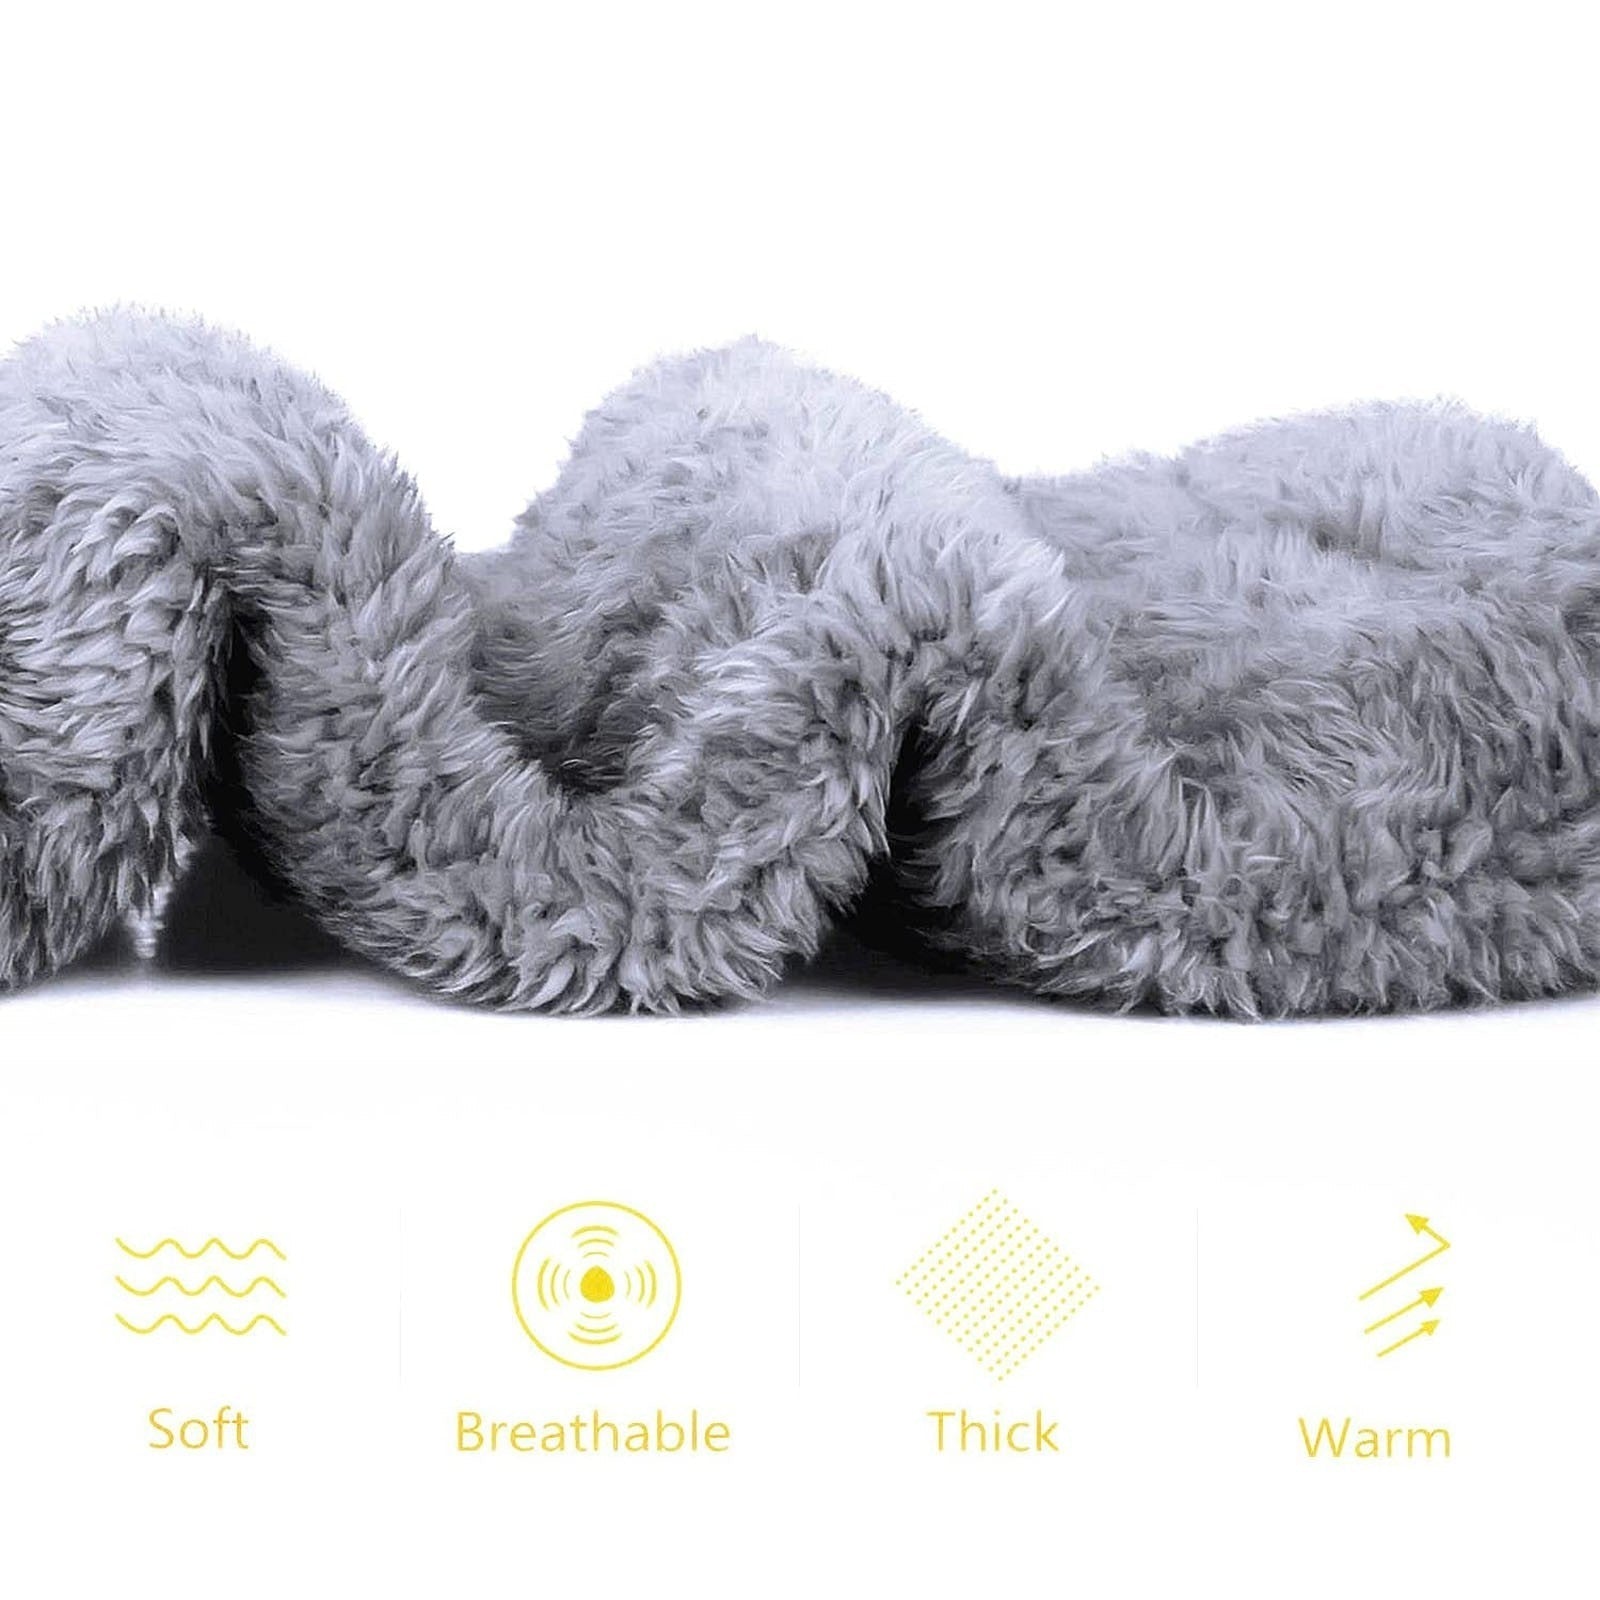 SnugglePaws™ Comfortabele sokpantoffels